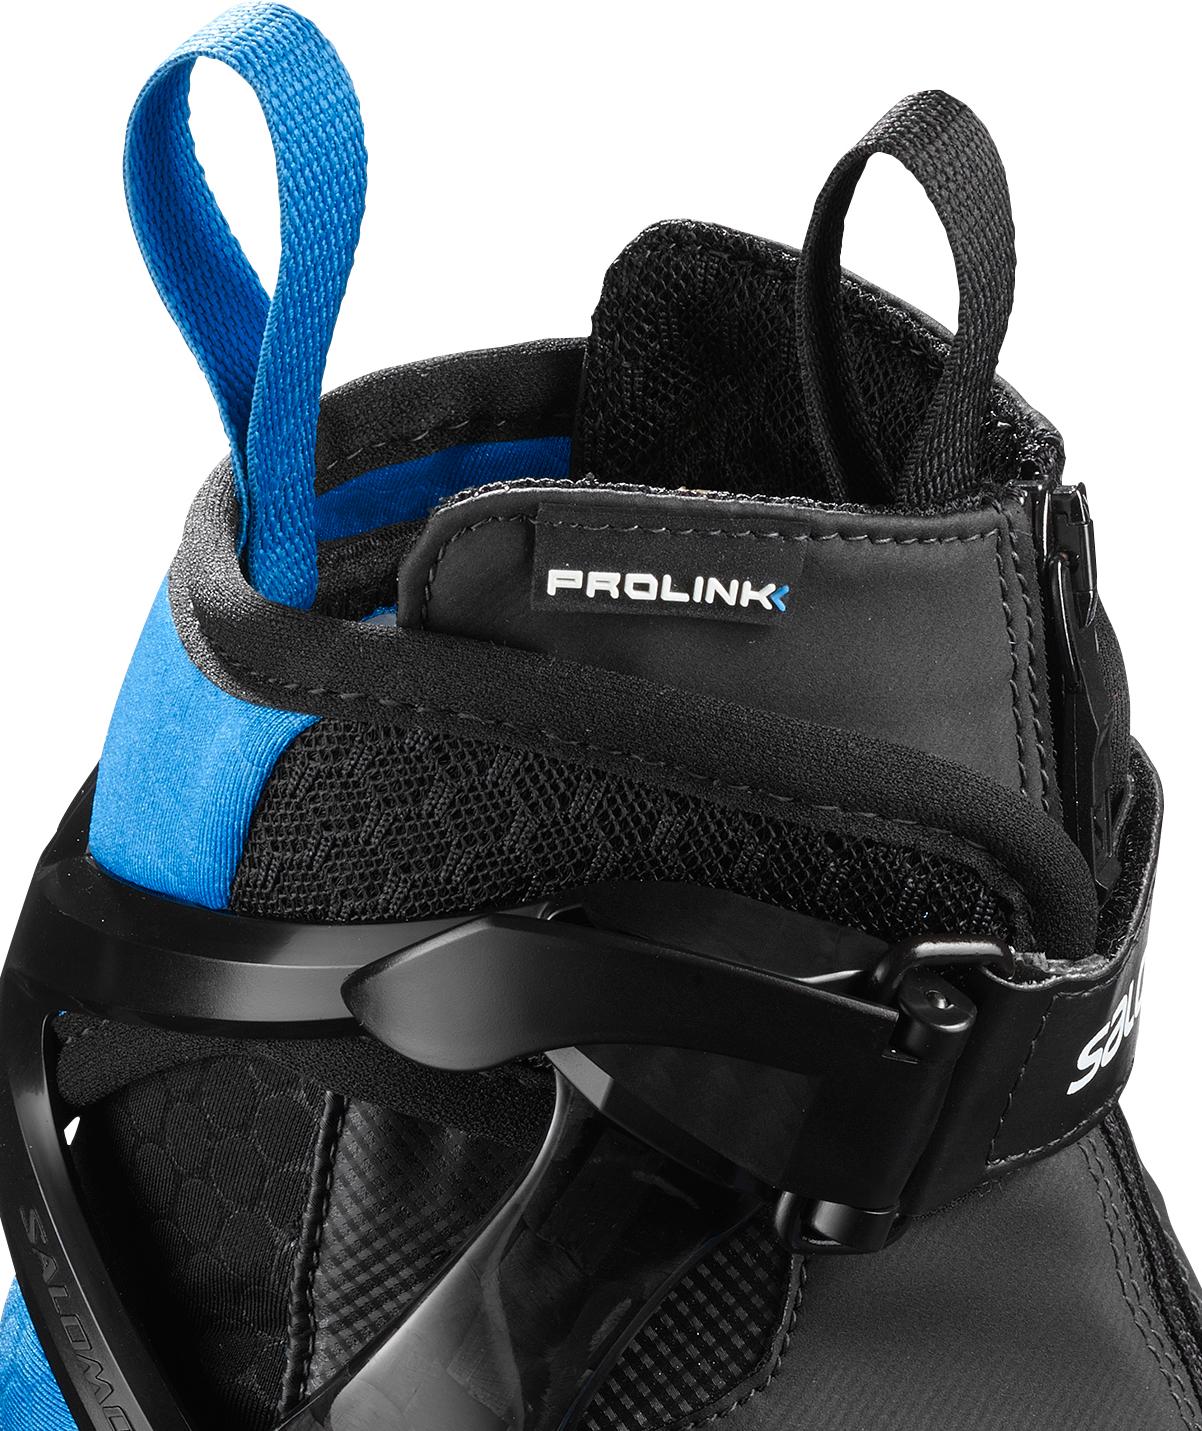 Лыжные ботинки SALOMON 2019-20 S/race skate plus Prolink